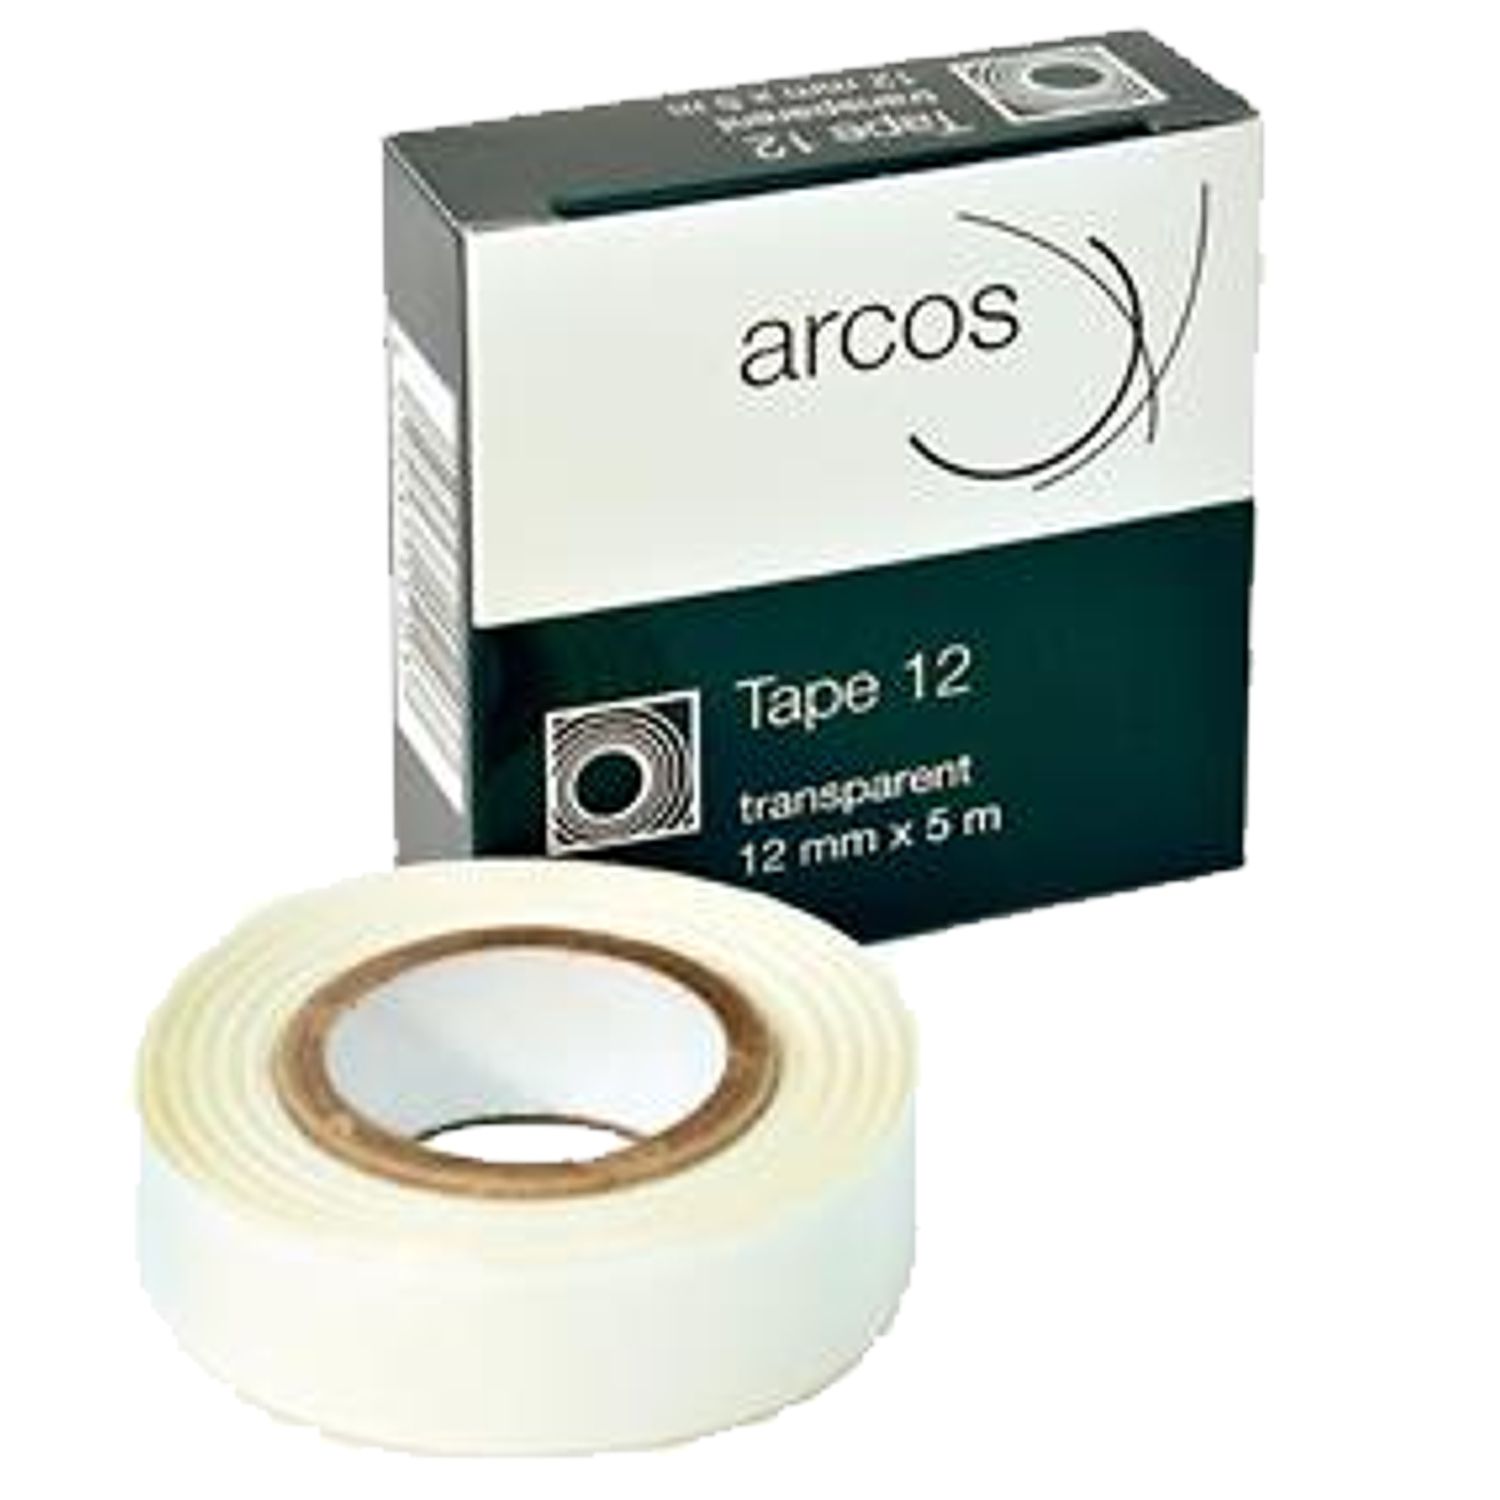 Arcos Tape Toupetband 12 mm